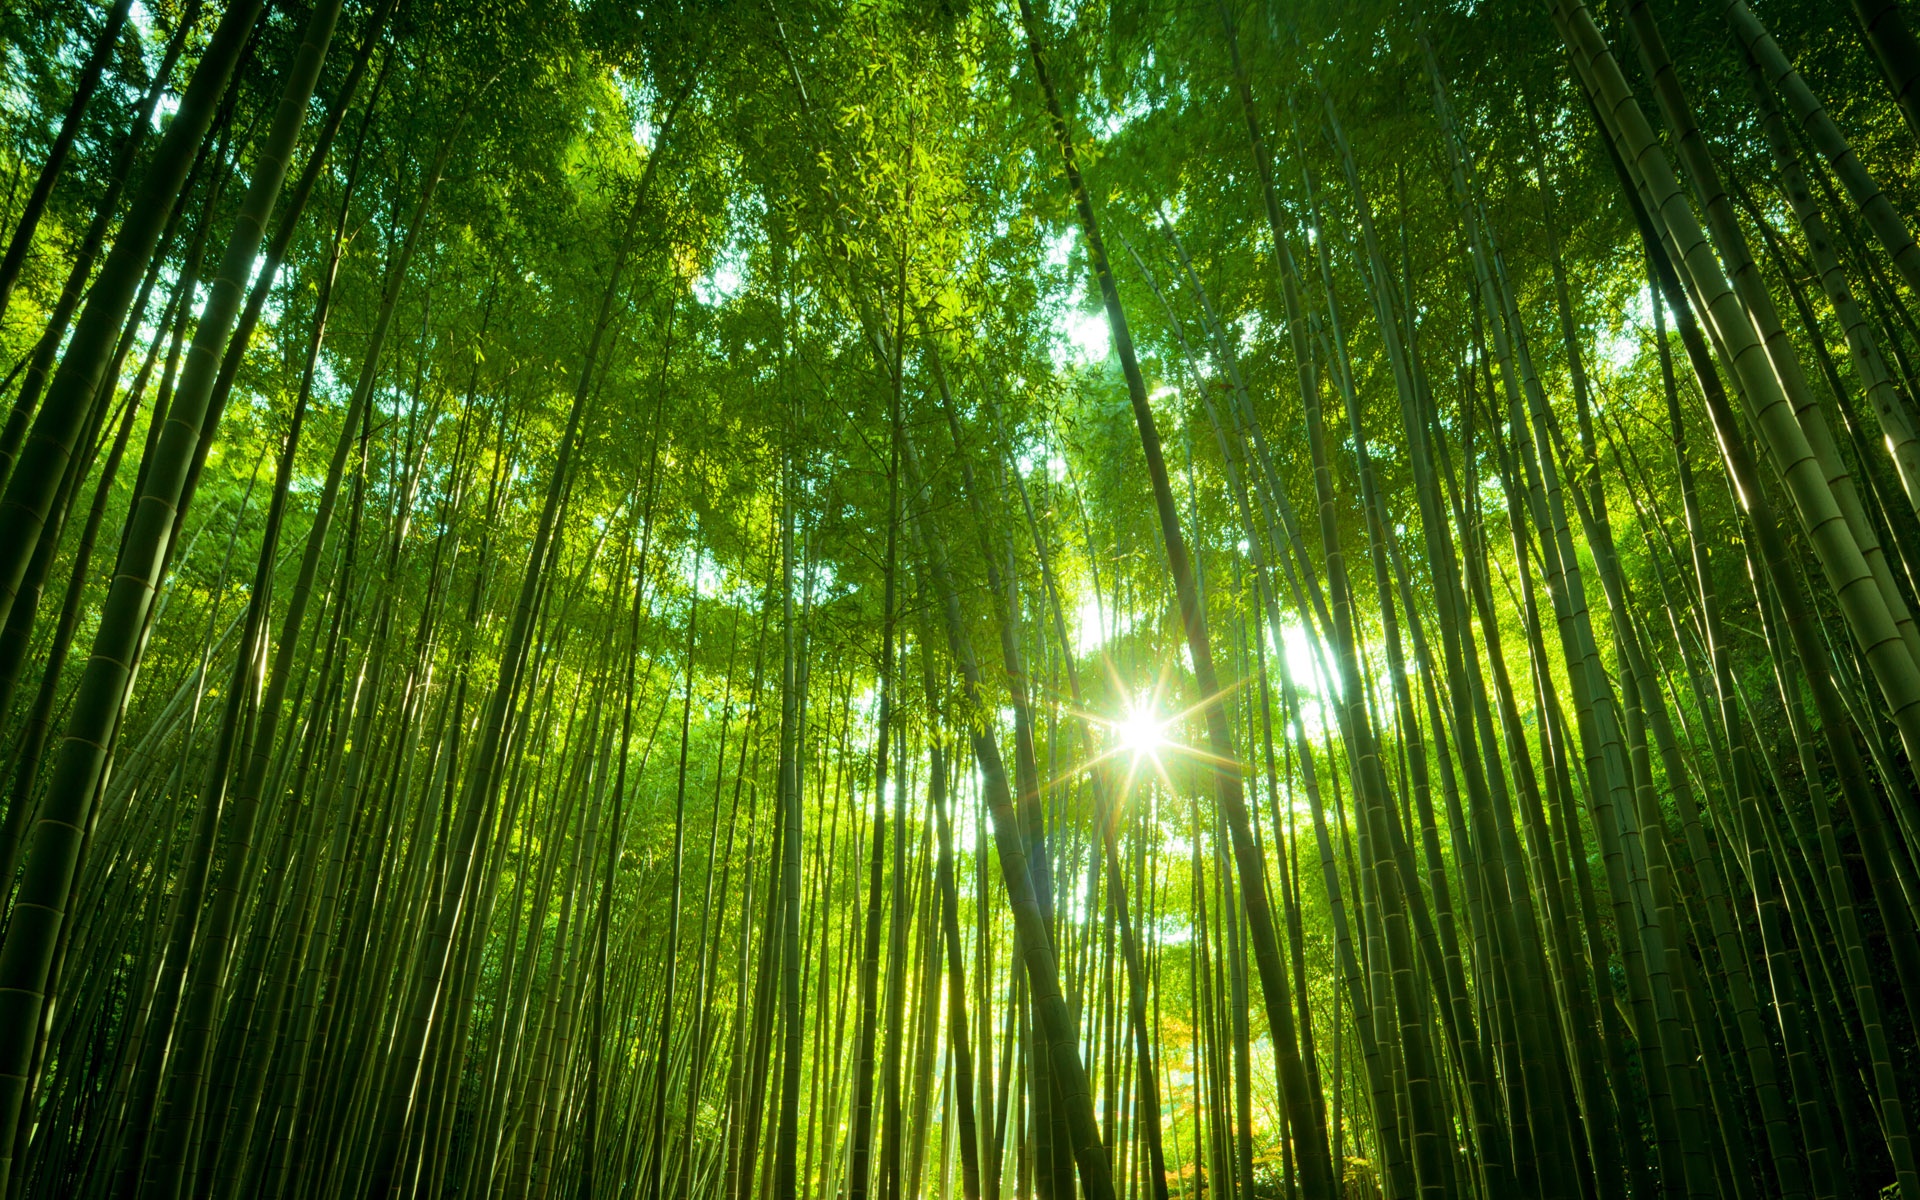 Bamboo Forest Wallpaper Mural. MuralsWallpaper Bamboo